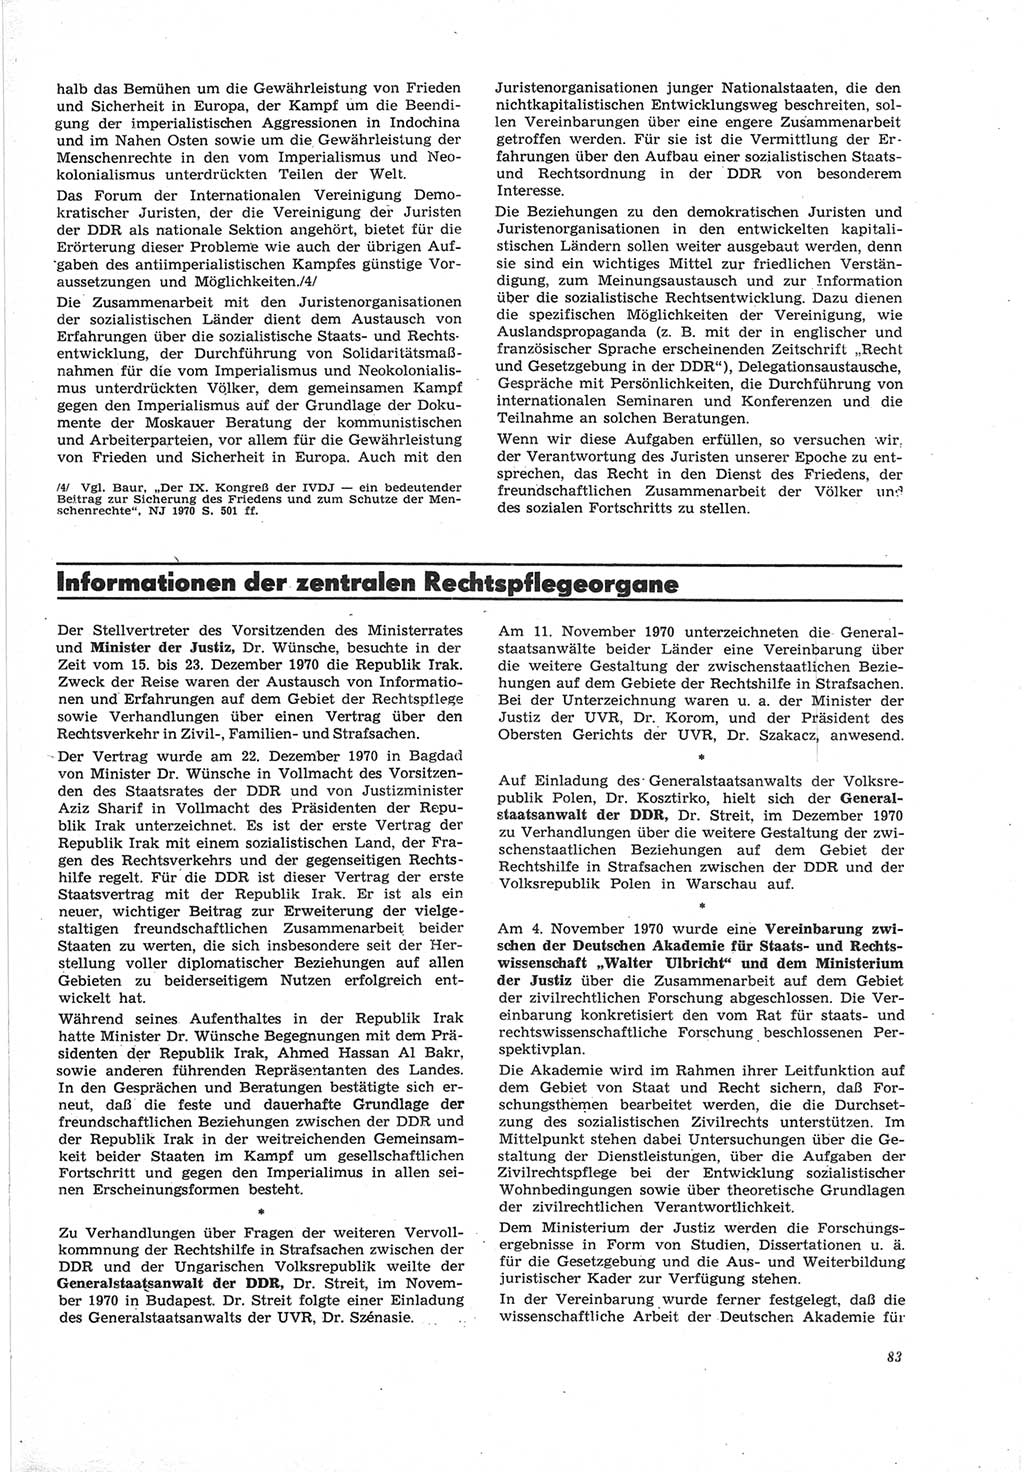 Neue Justiz (NJ), Zeitschrift für Recht und Rechtswissenschaft [Deutsche Demokratische Republik (DDR)], 25. Jahrgang 1971, Seite 83 (NJ DDR 1971, S. 83)